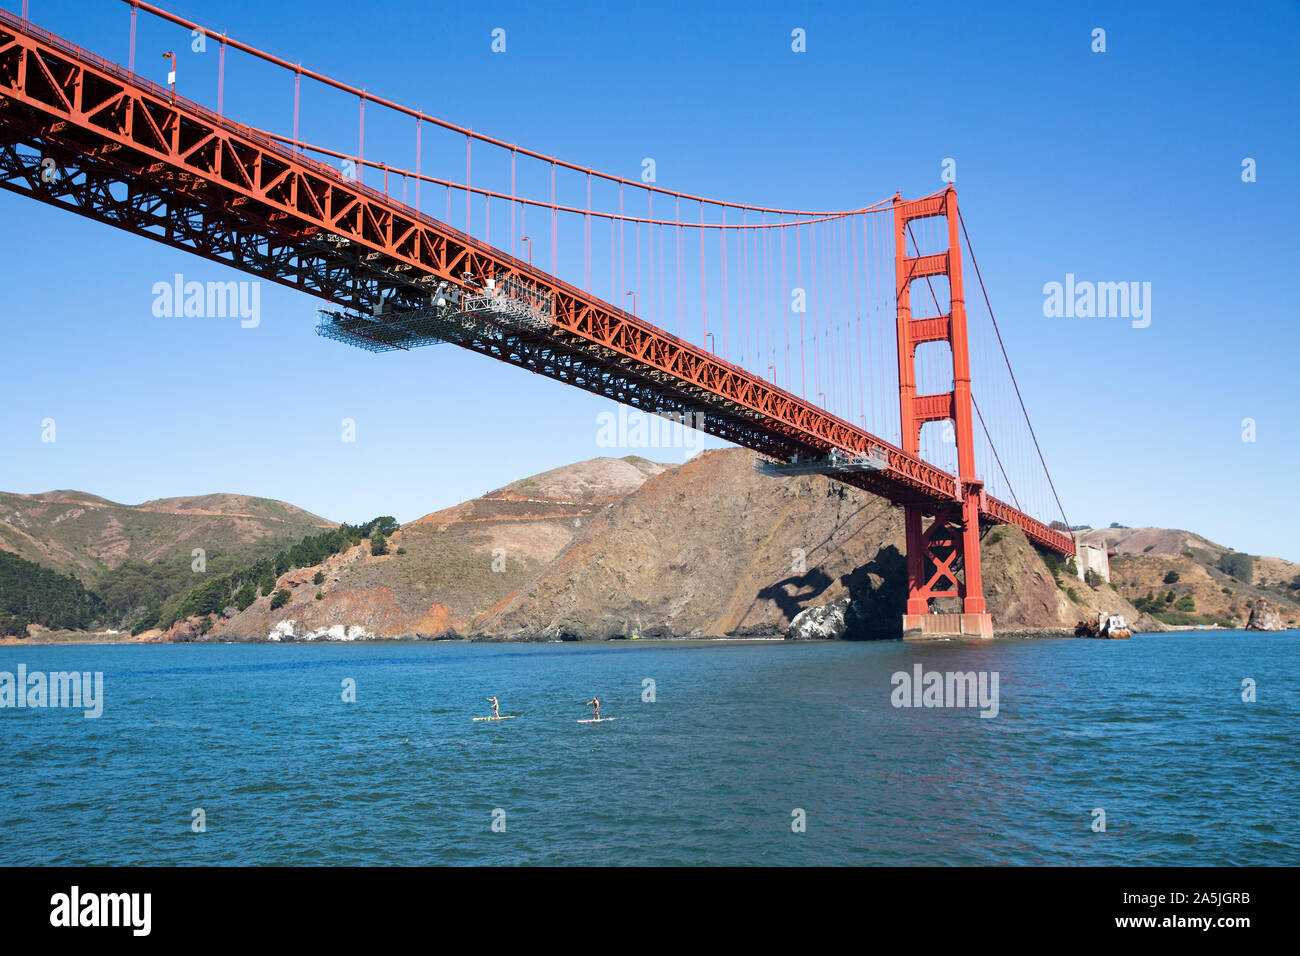 SAN FRANCISCO, USA - September 8, 2019: 2 Personen am Stand up Paddle Boards in der Bucht von San Francisco unter der Golden Gate Bridge. Stockfoto